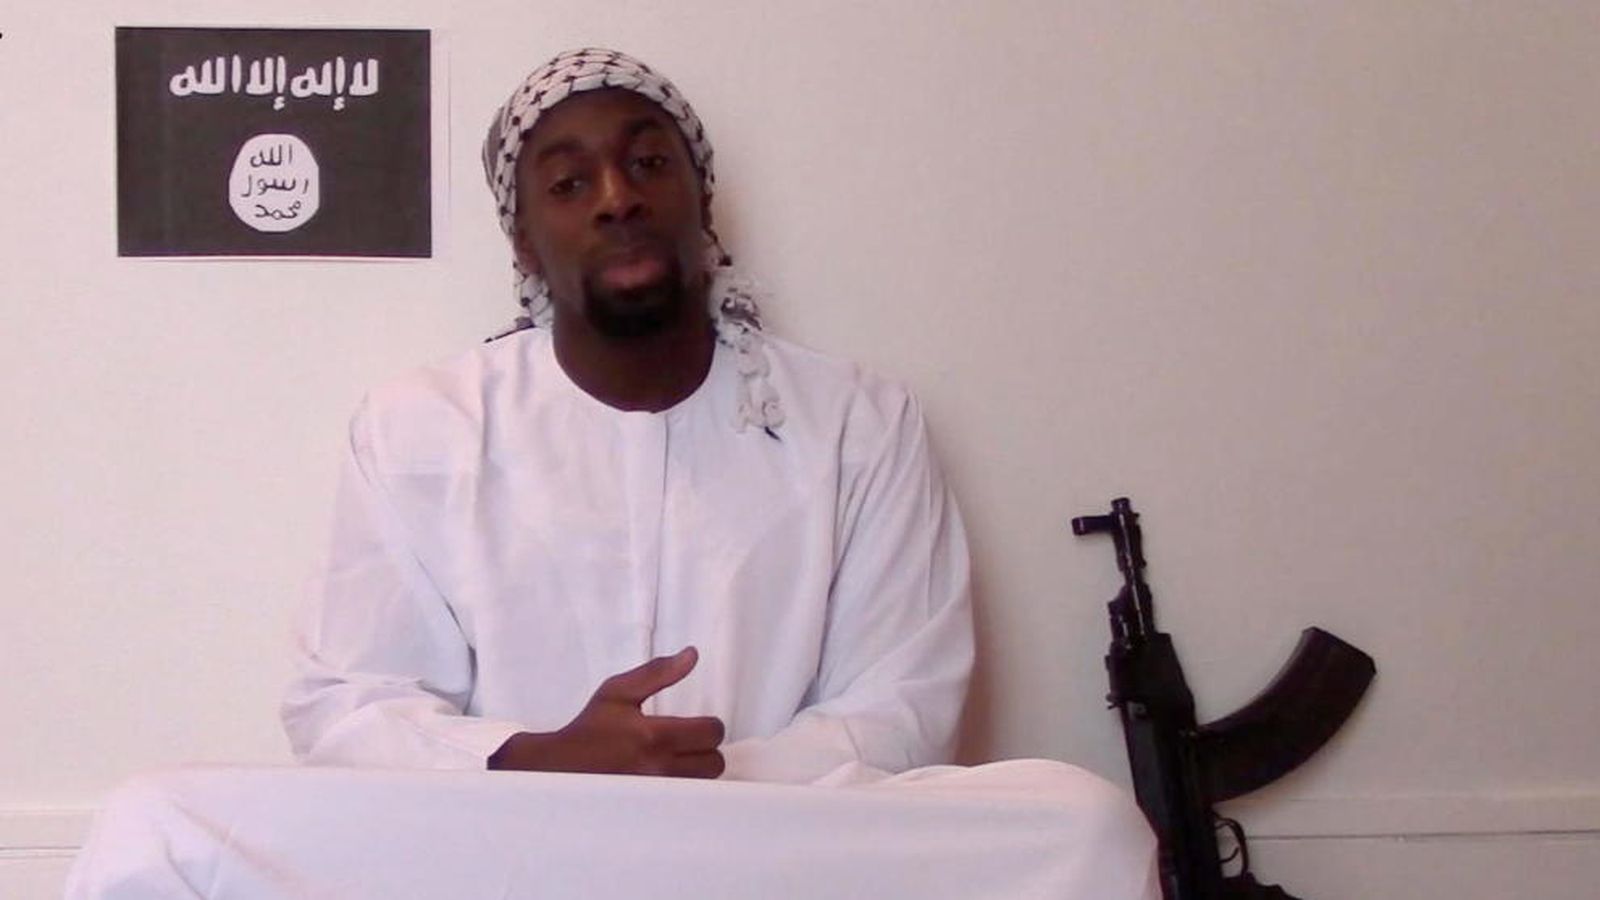 Foto: Amedy Coulibaly, el terrorista que mató a cinco personas en enero de 2015 en París